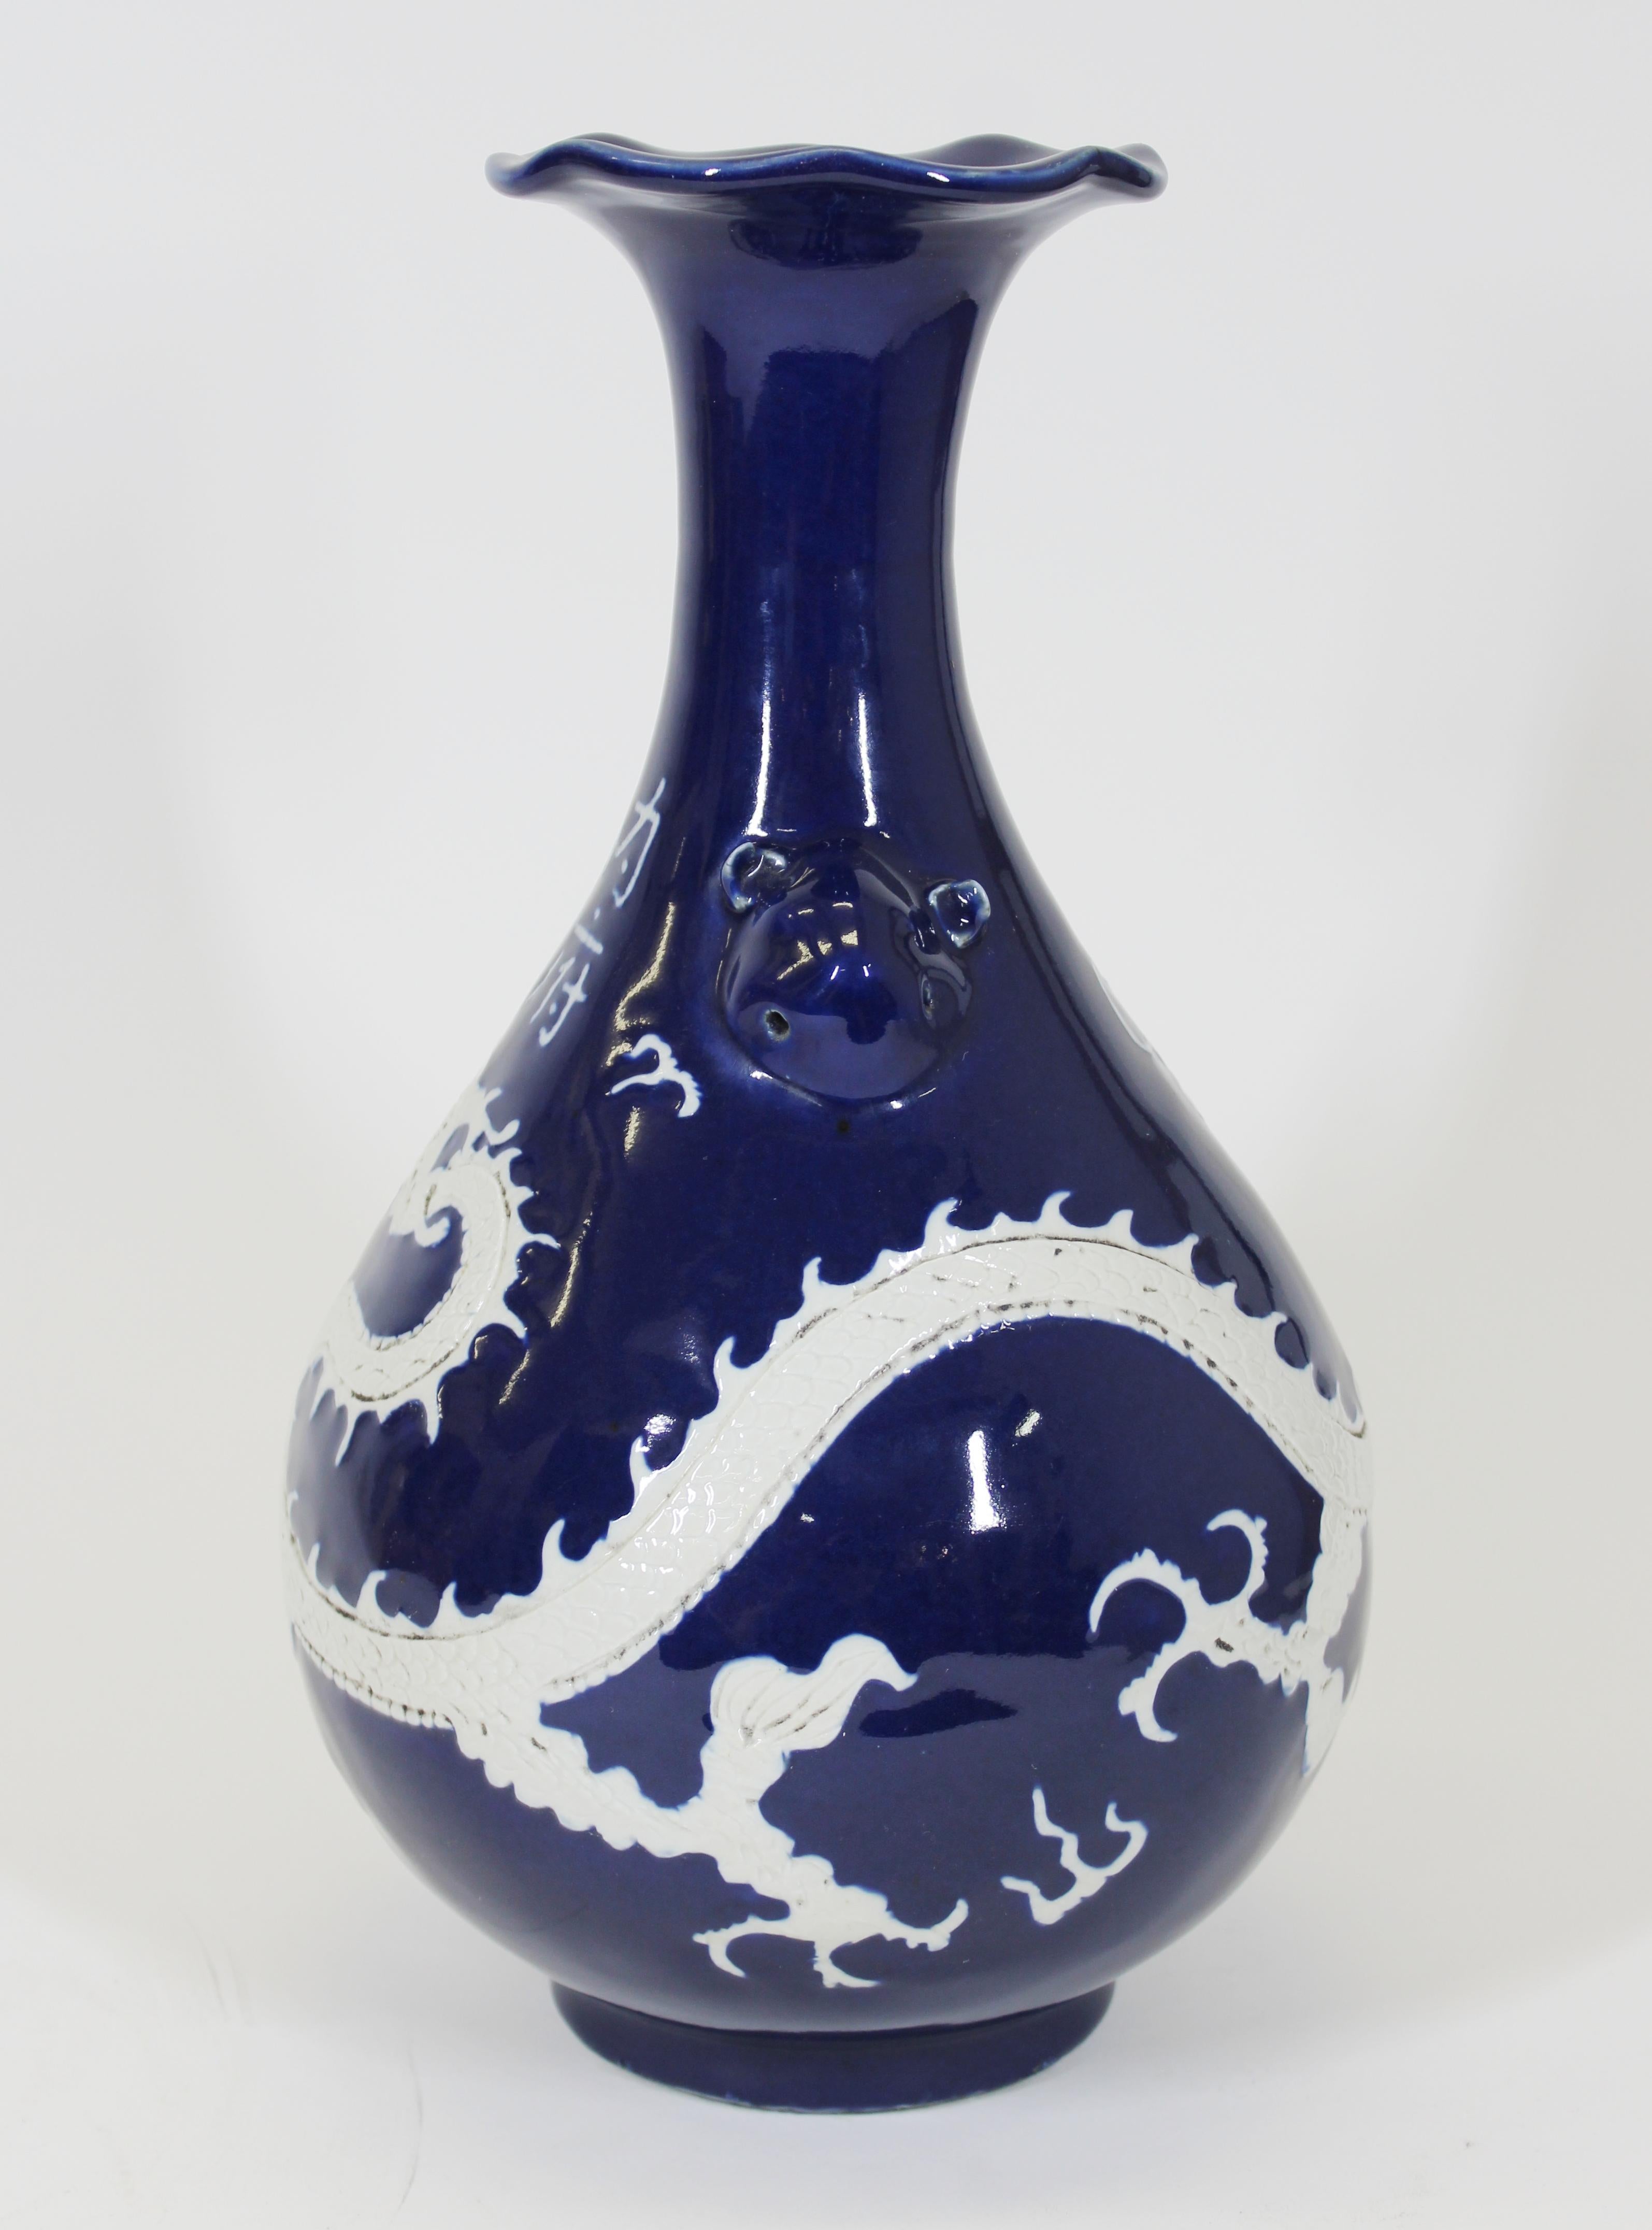 Vase en porcelaine de forme balustre de la dynastie chinoise Qing, à la riche glaçure bleu cobalt, avec un dragon blanc en haut-relief entourant le vase. Avec des poignées stylisées et une ouverture en forme de tulipe. Les caractères chinois sur le